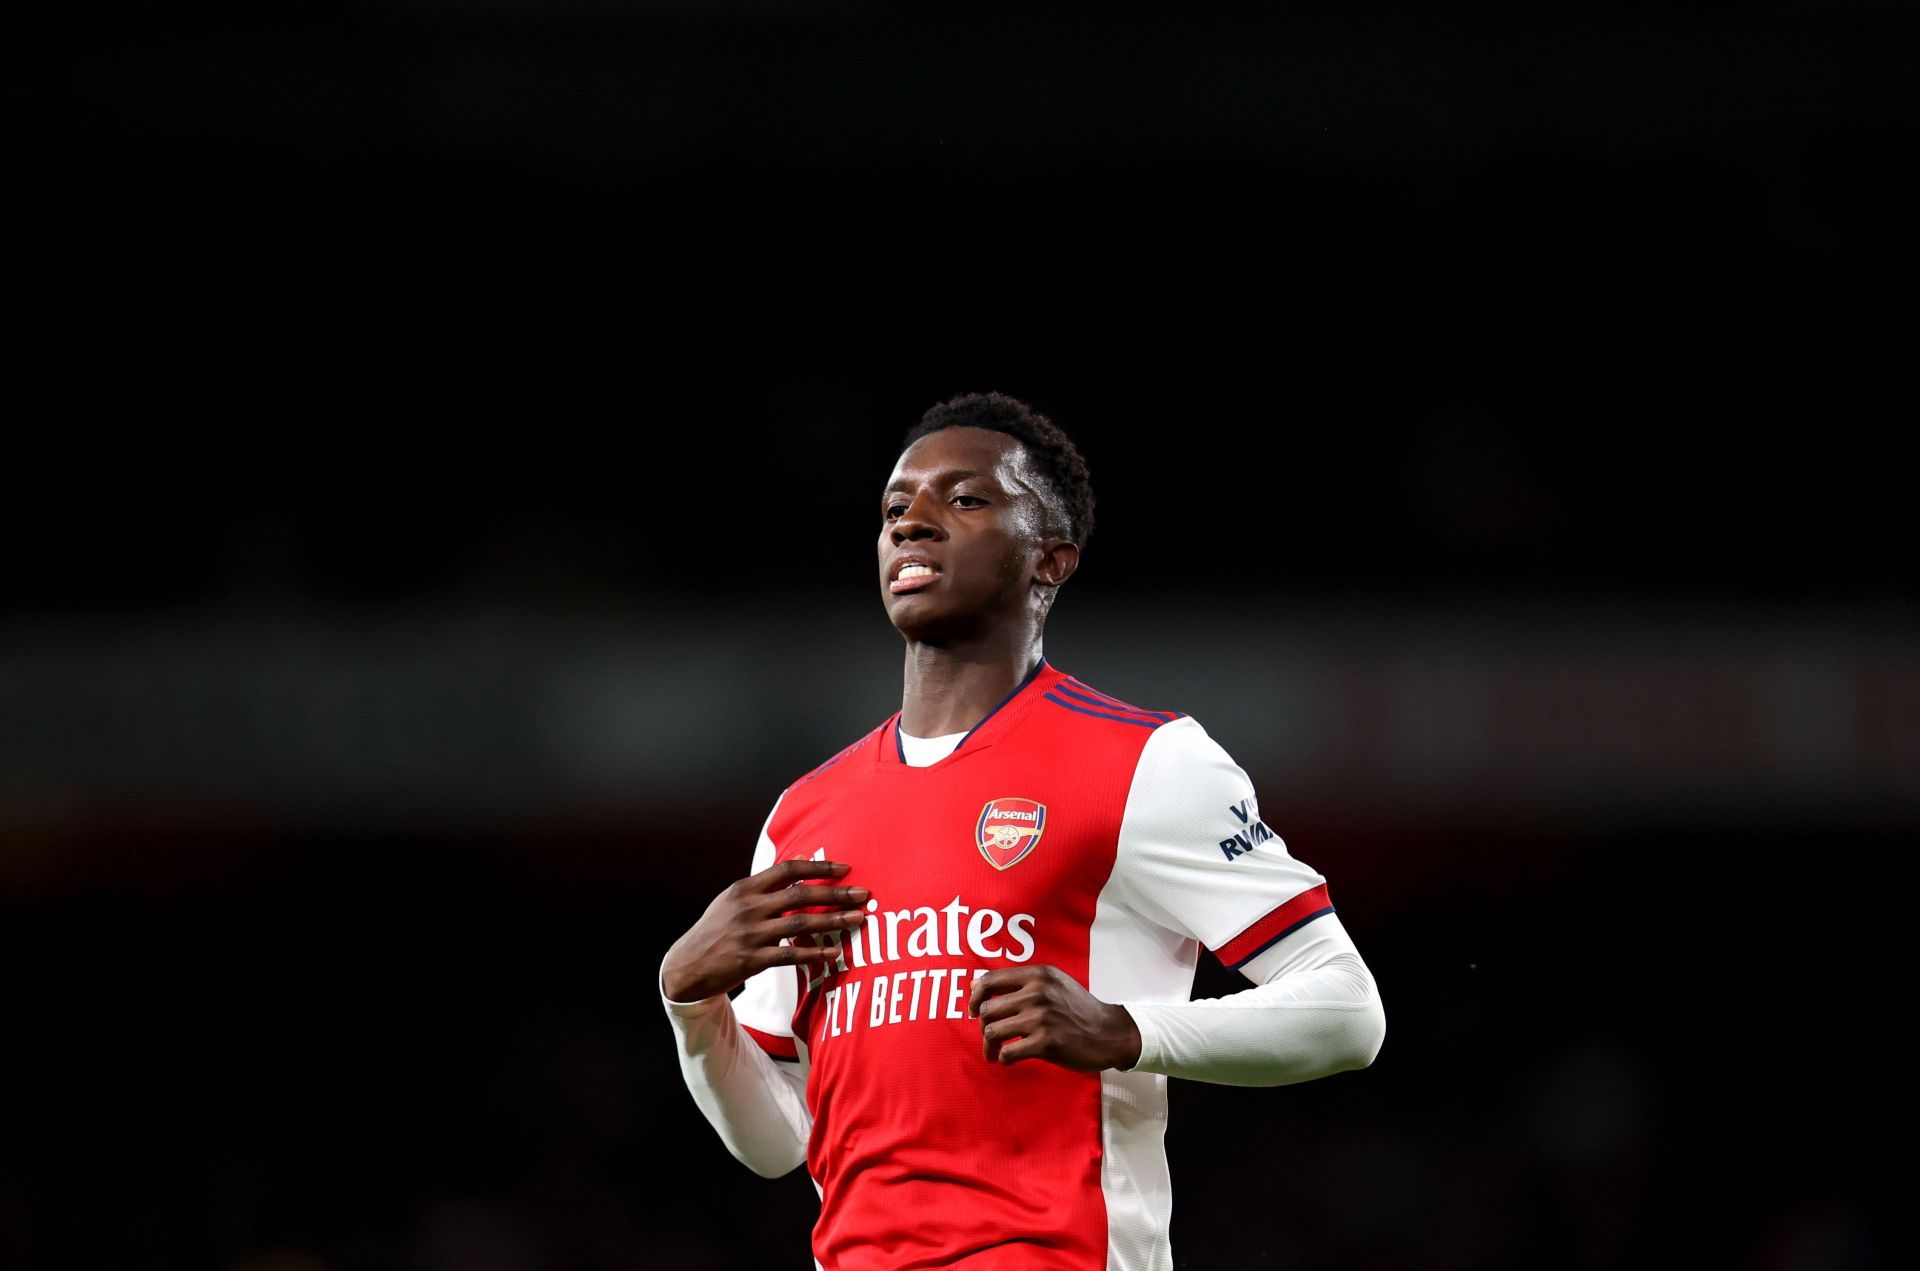 Eddie Nketiah has informed Arsenal he wants to leave.